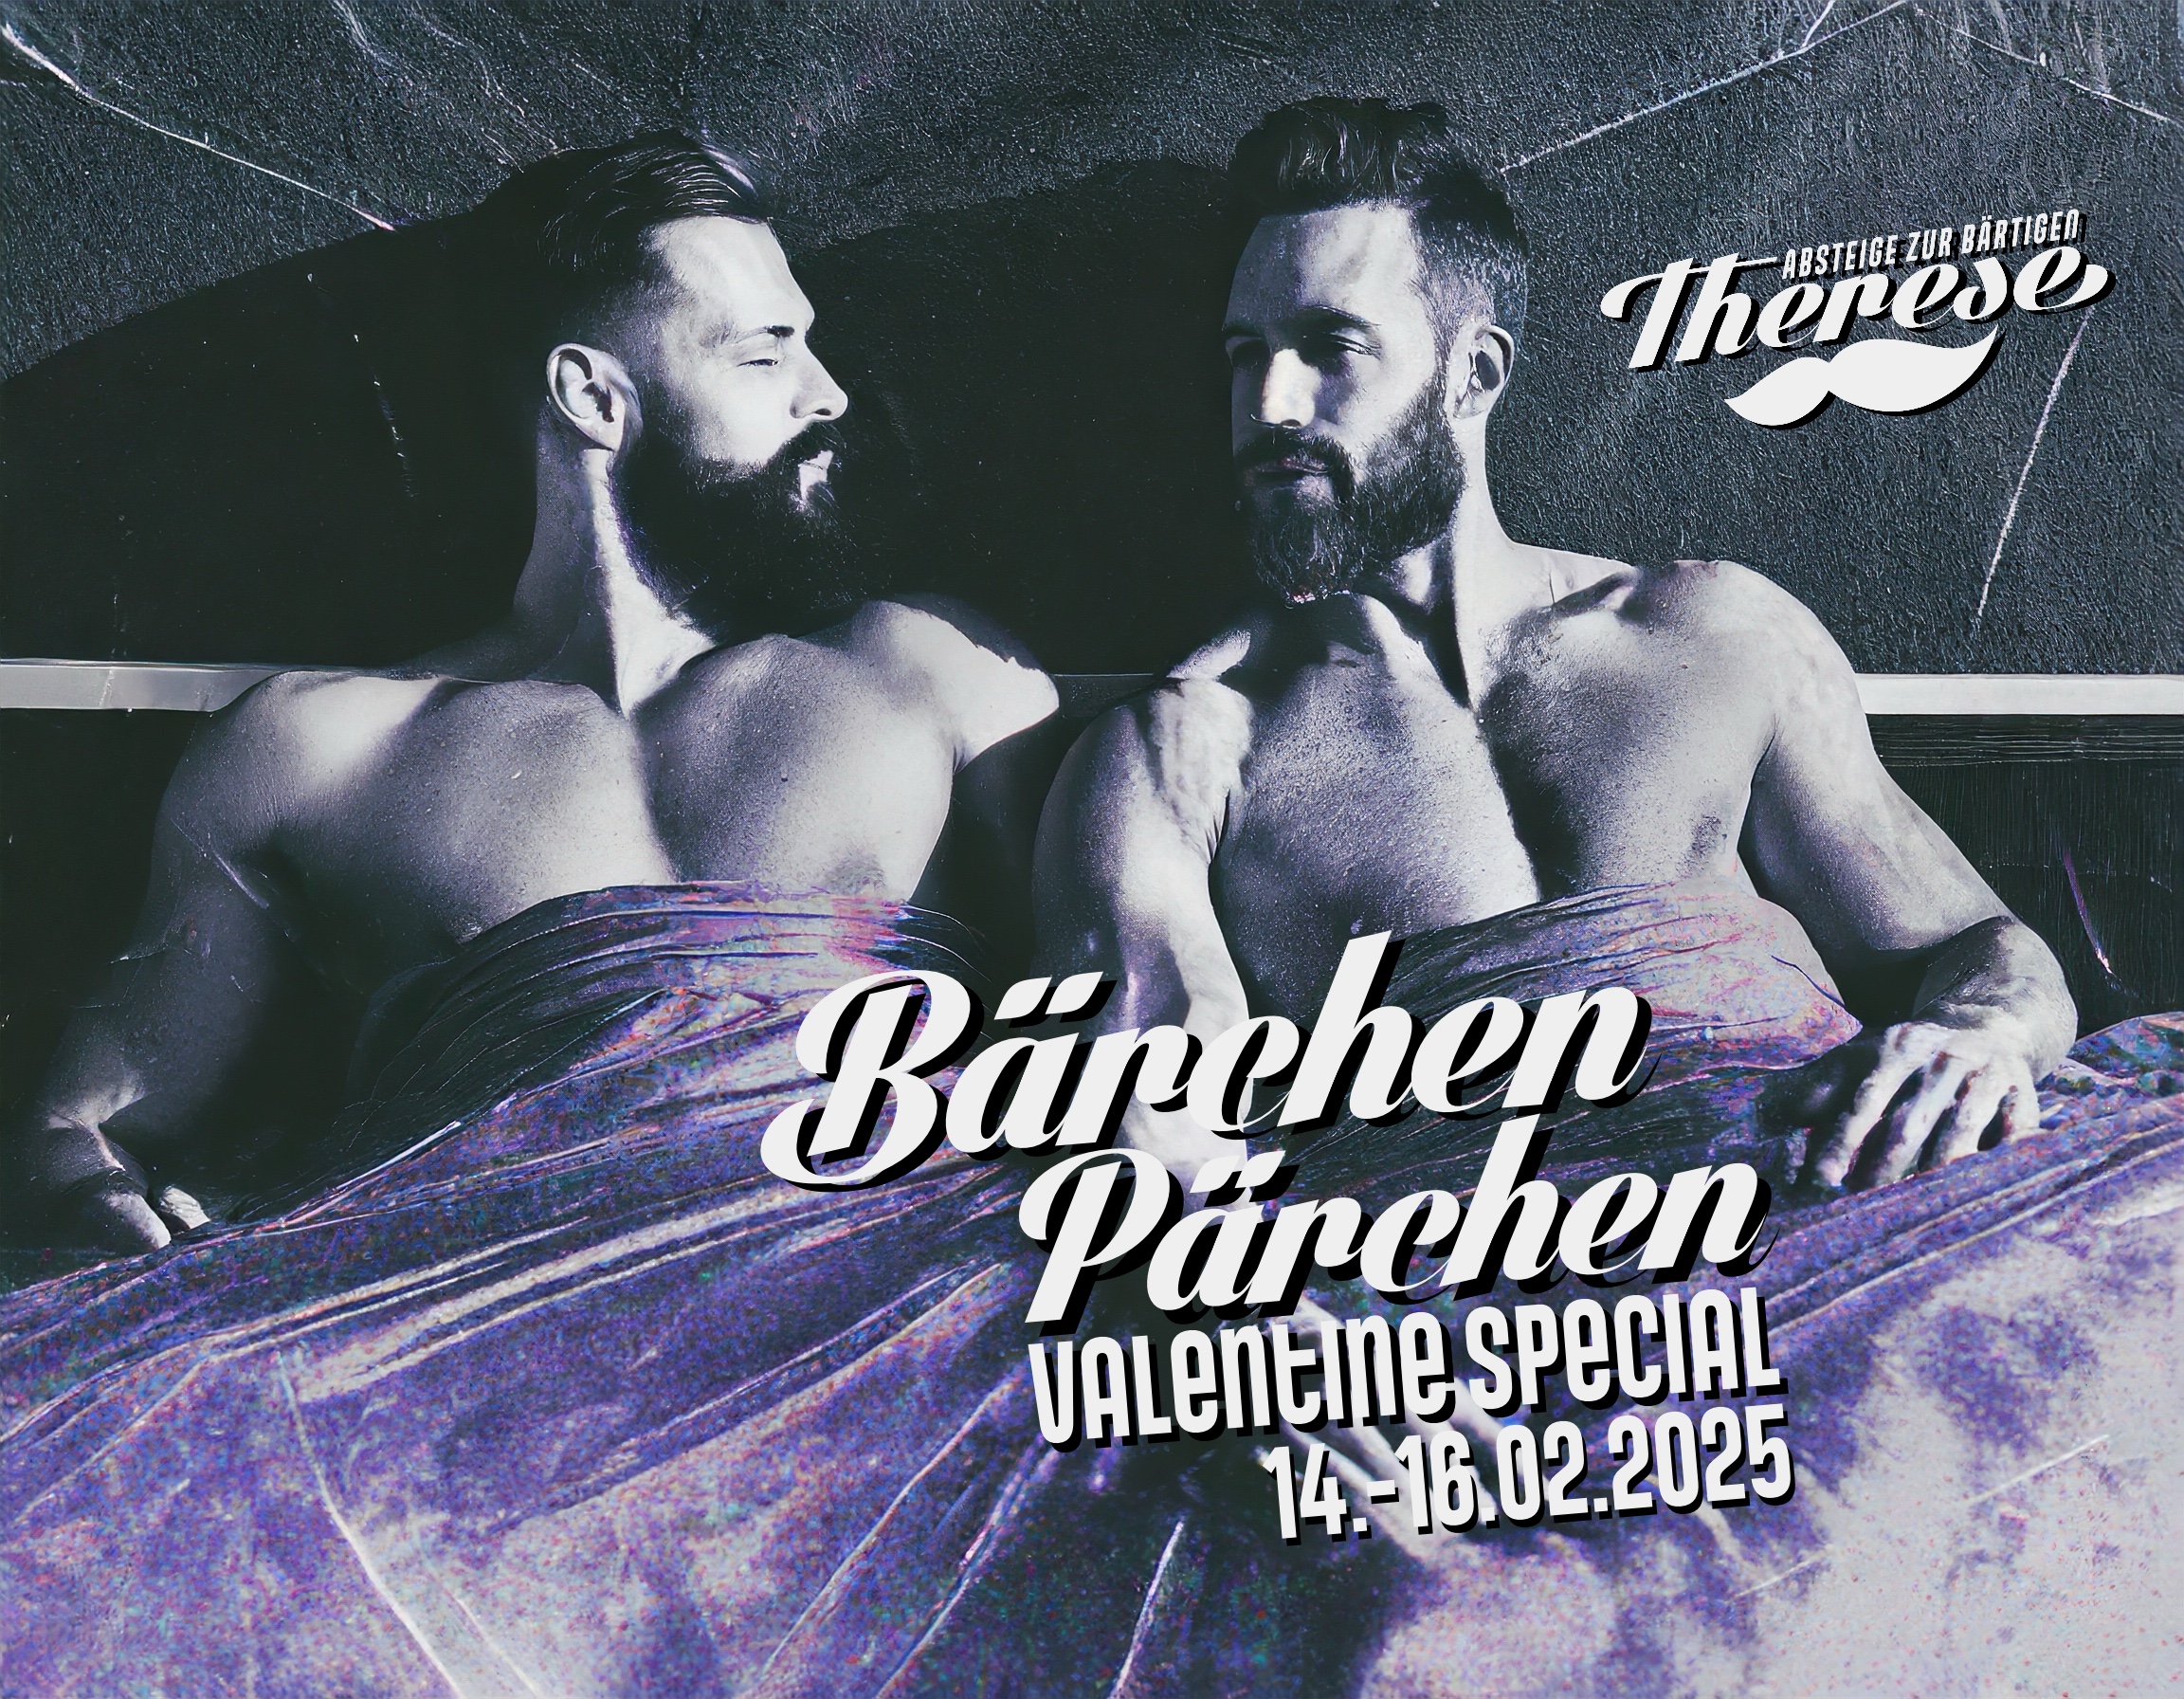 BÄRCHEN PÄRCHEN – Valentine Special